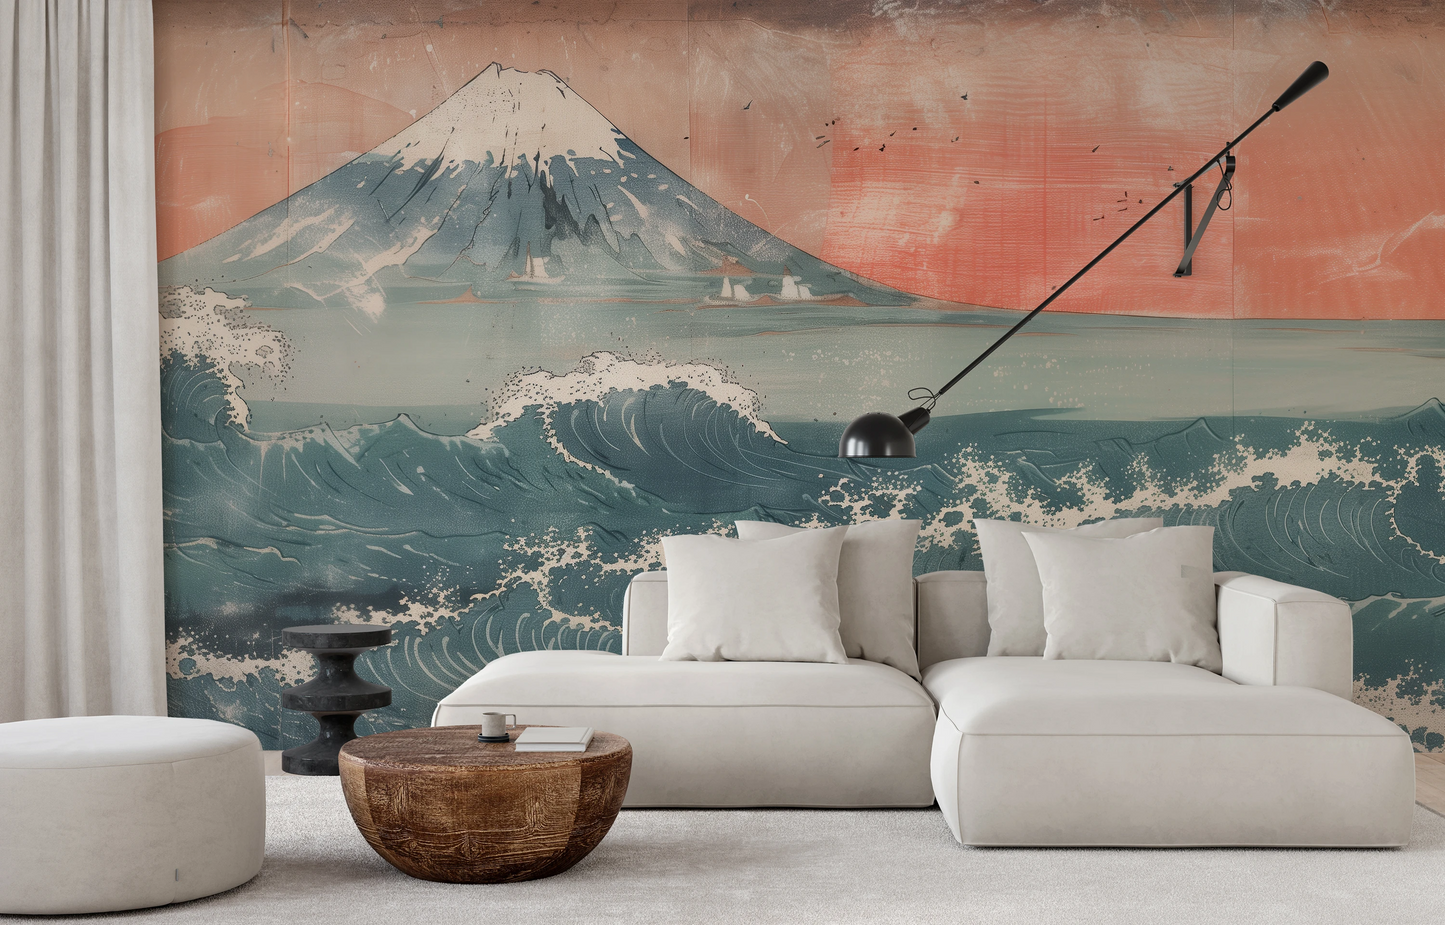 Wzór fototapety o nazwie Fuji's Serenity pokazanej w kontekście pomieszczenia.